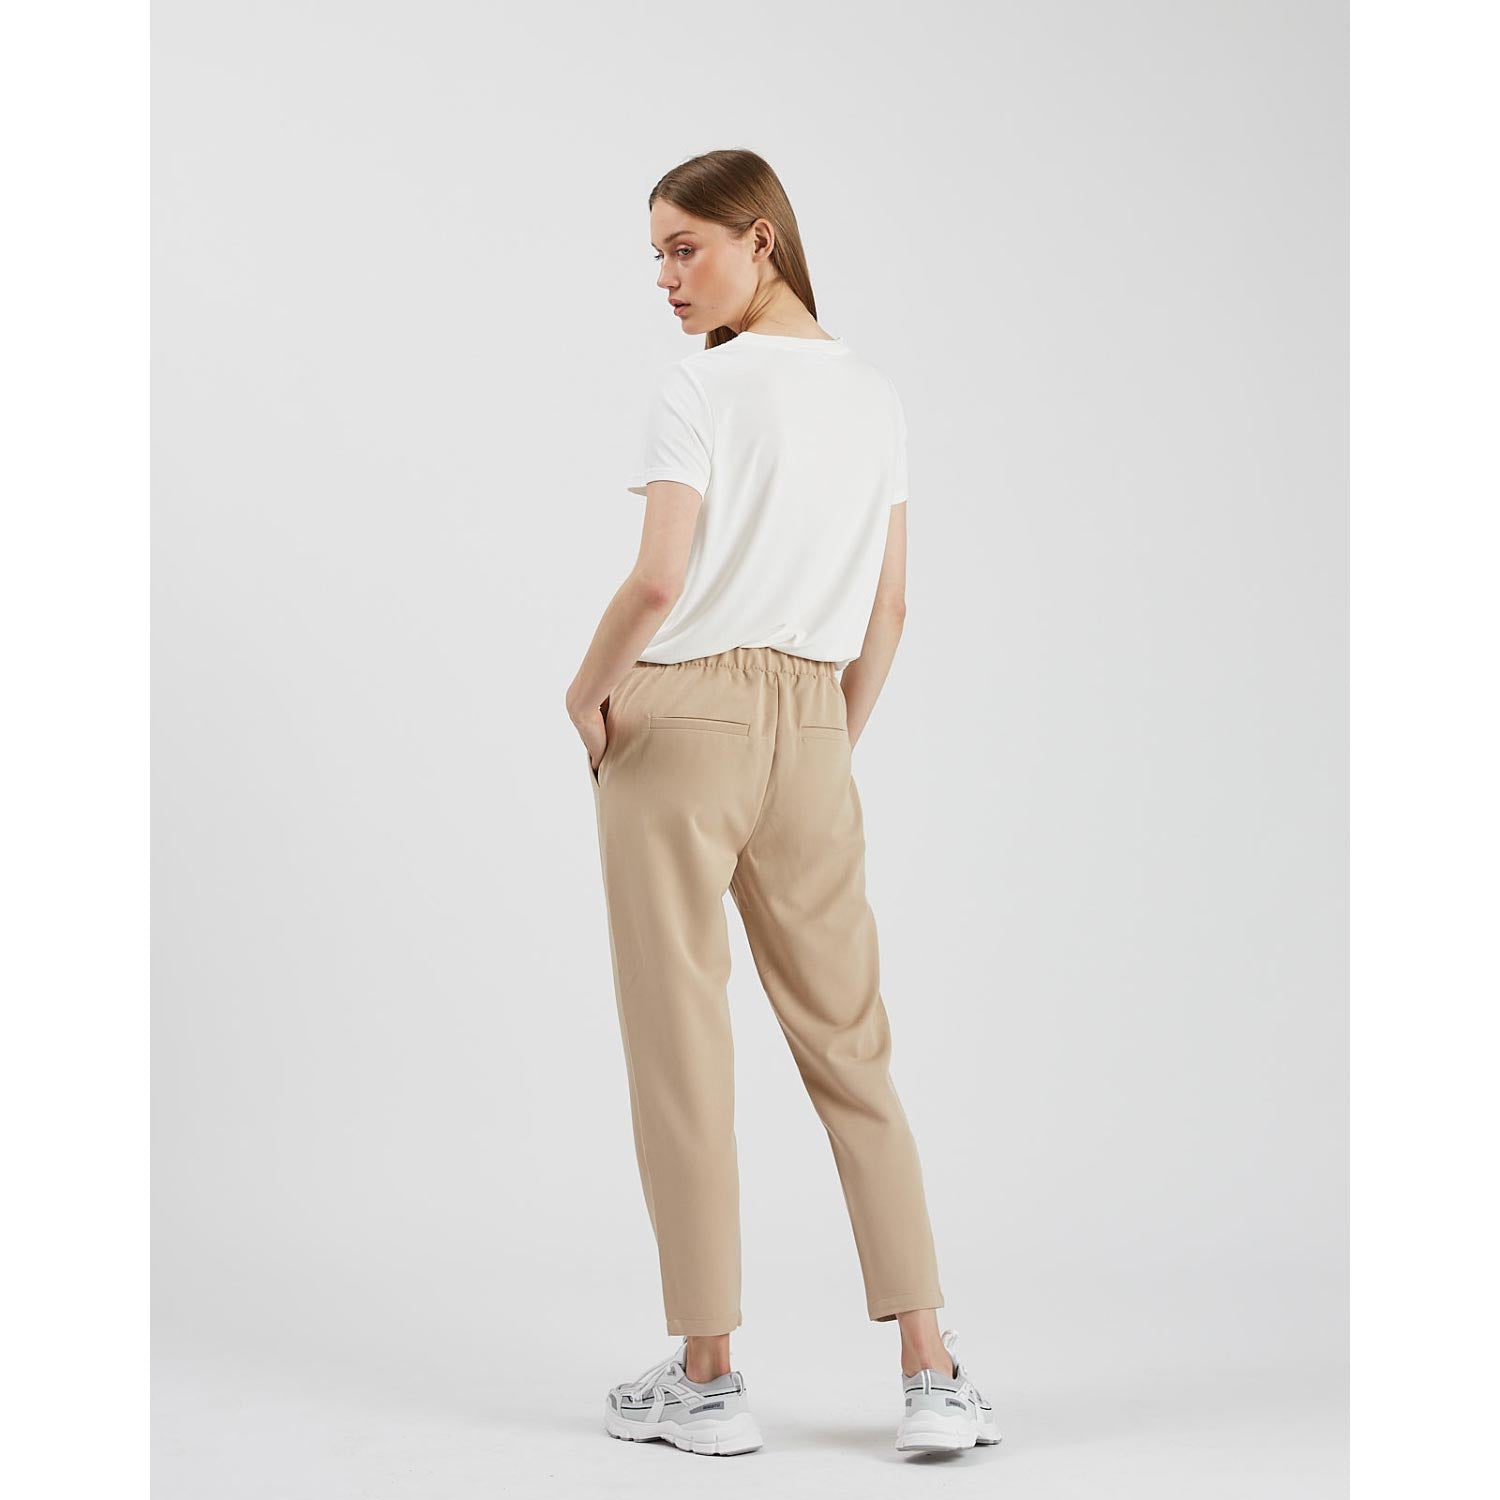 Buy CRIMSOUNE CLUB Solid Cotton Blend Slim Fit Women's Casual Pants |  Shoppers Stop